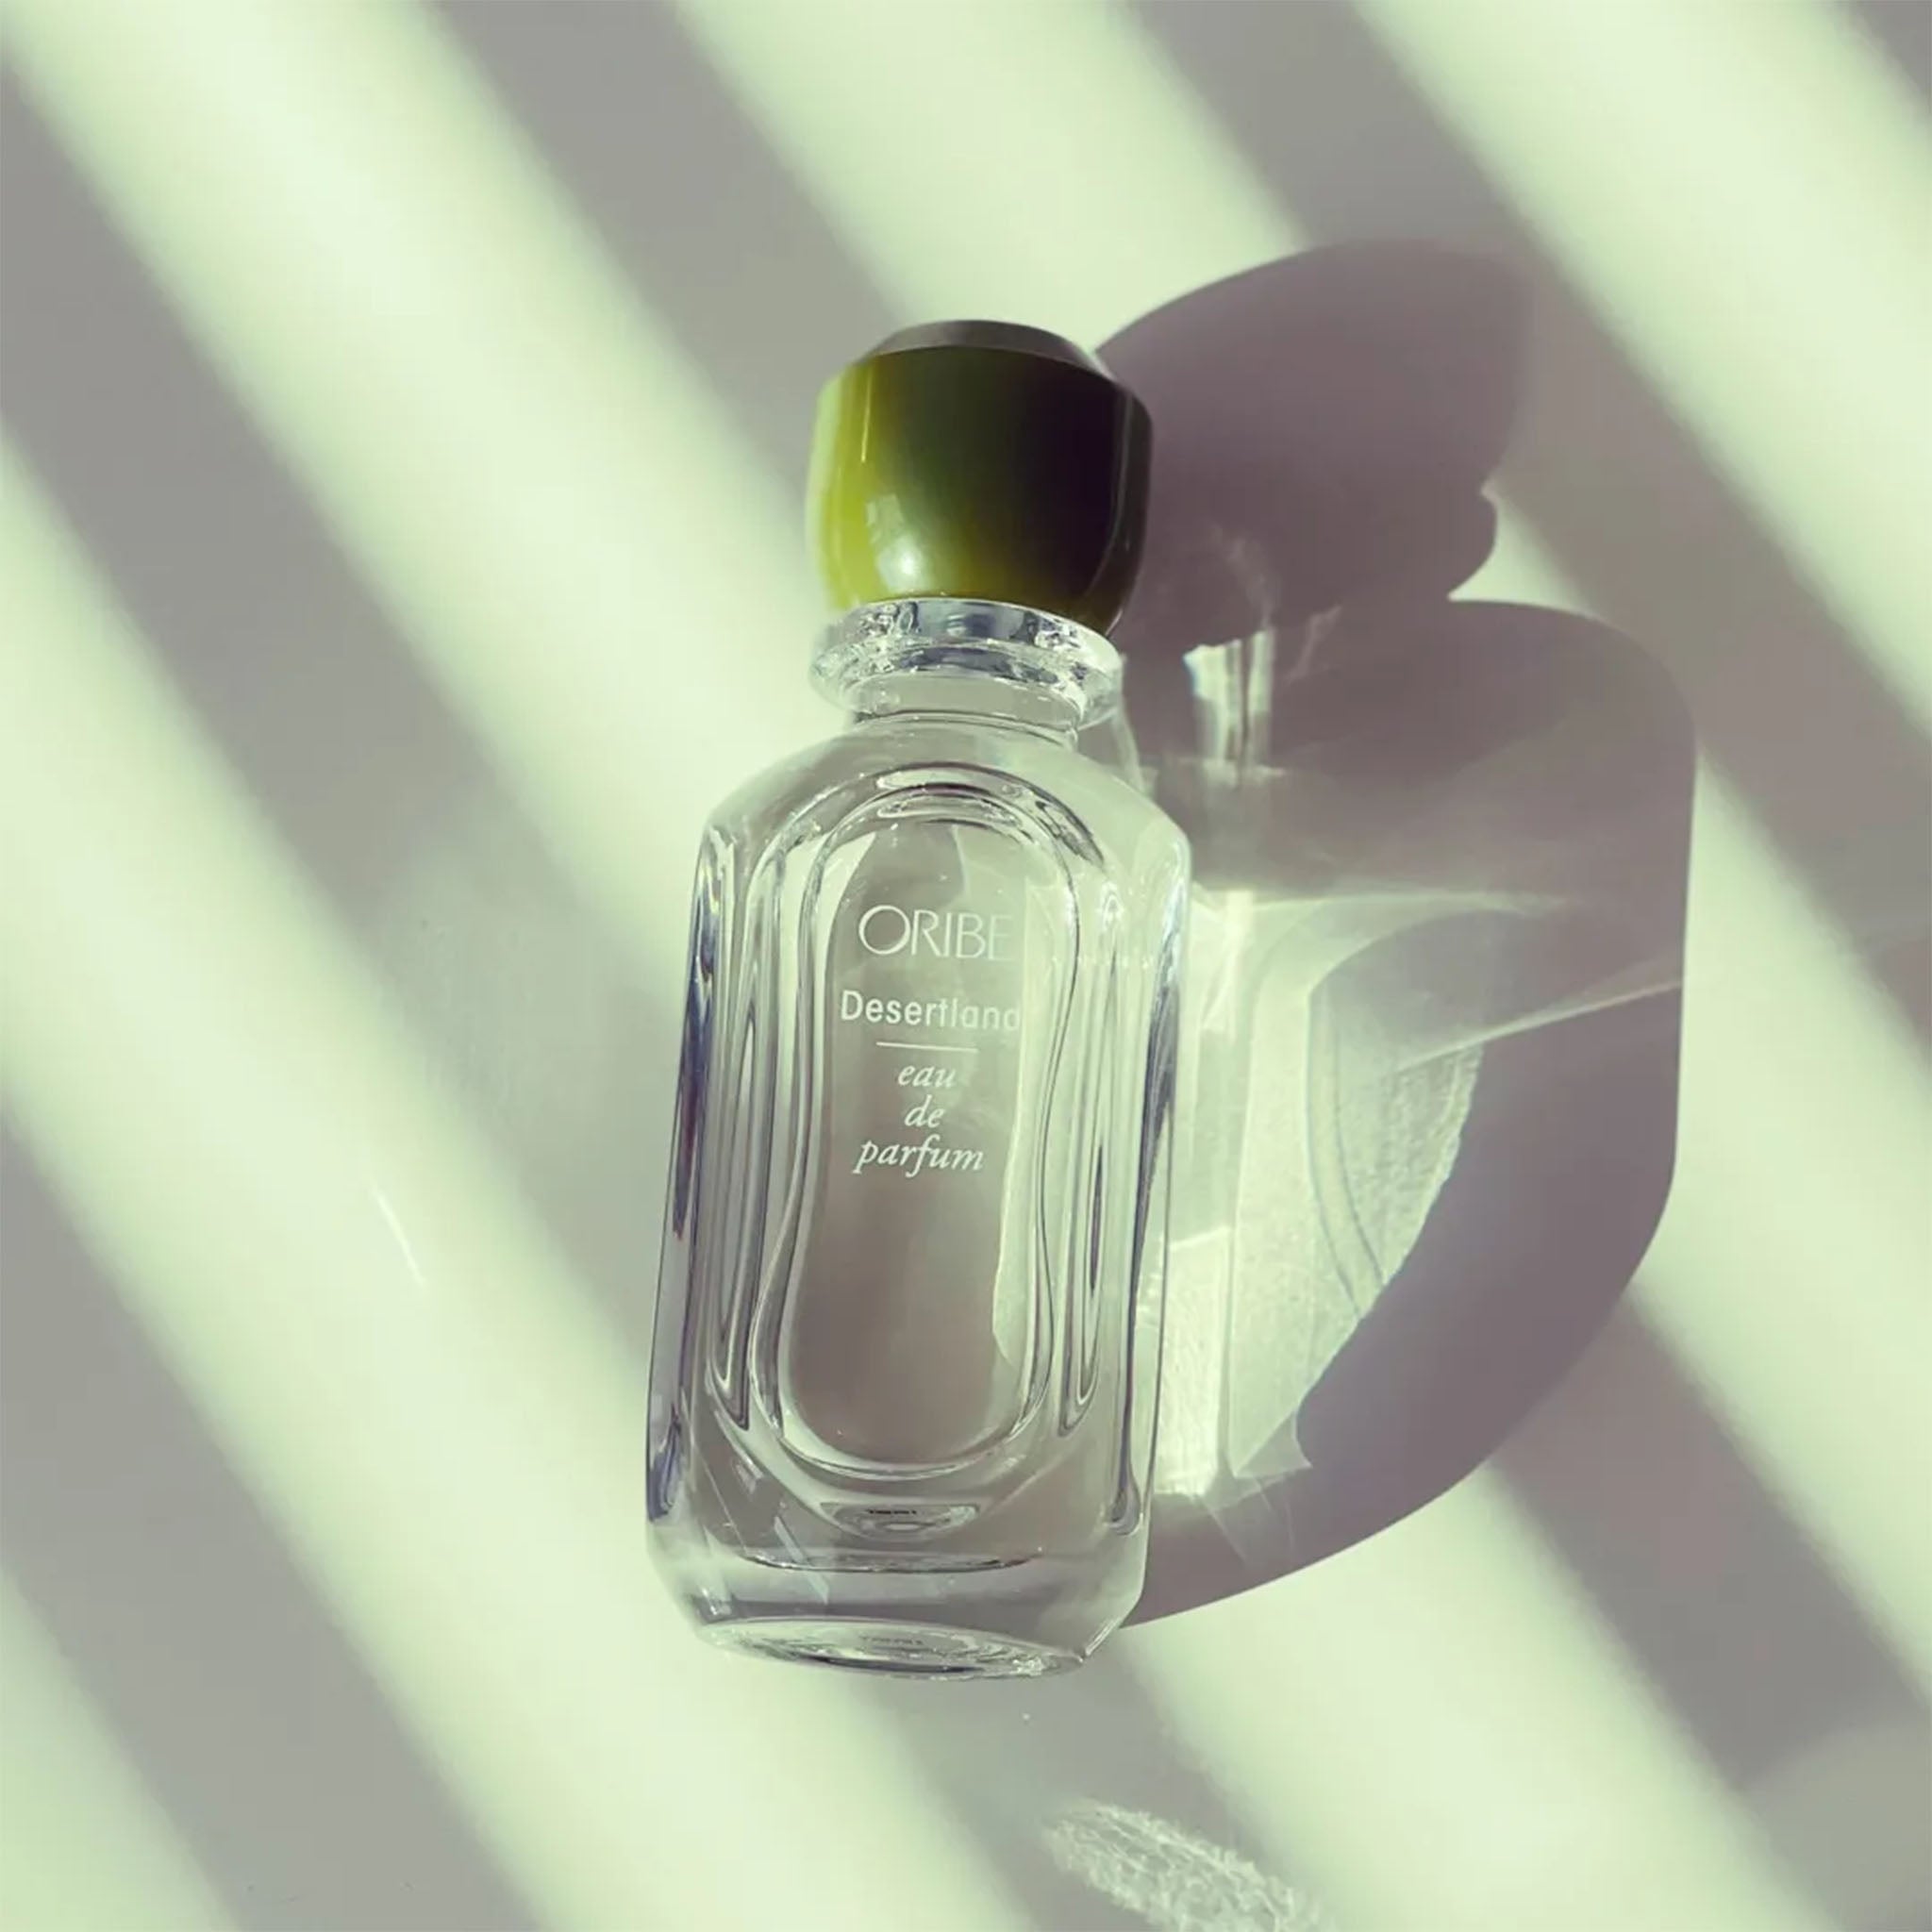 Oribe. Eau de Parfum Desertland - 75 ml - Concept C. Shop